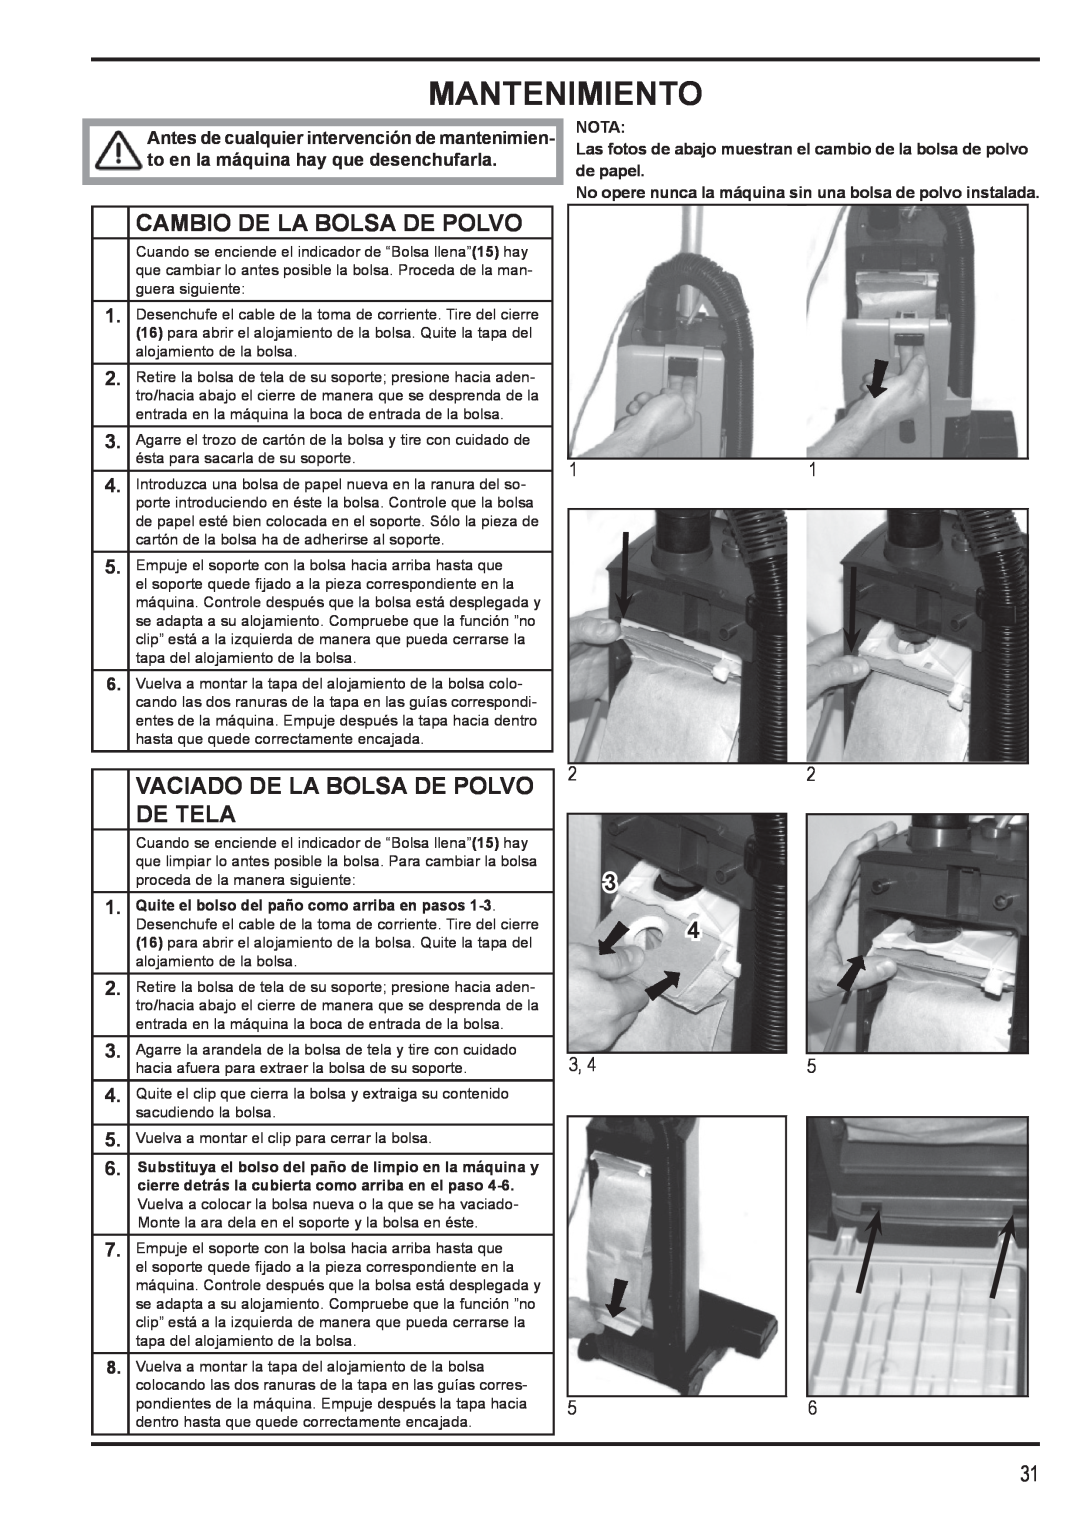 Nilfisk-Advance America 12H manual Mantenimiento, Cambio De La Bolsa De Polvo, Vaciado De La Bolsa De Polvo De Tela 